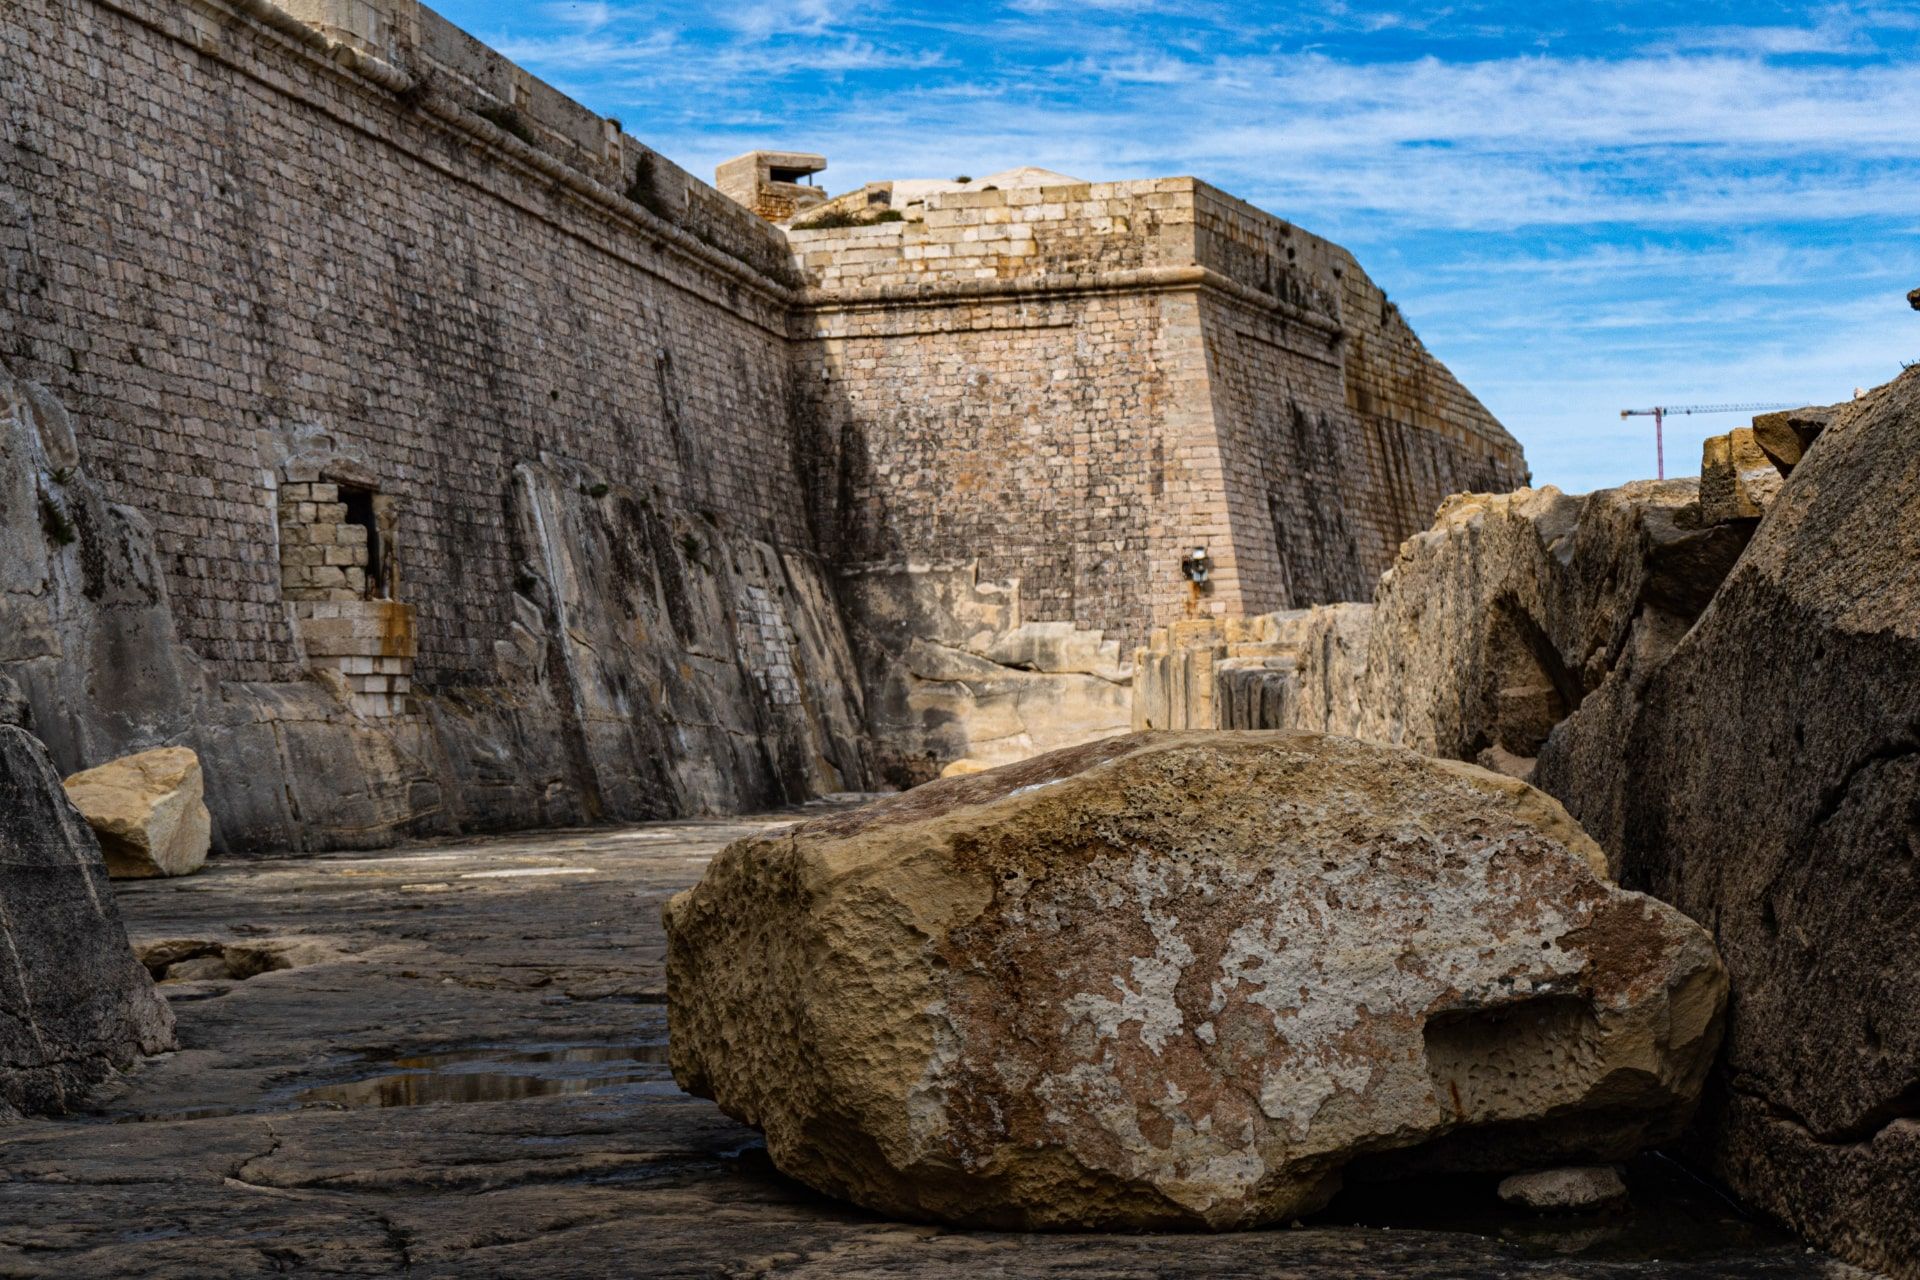 Valletta Fortress, at beautiful rocky Malta. Photo by Duane Chetcuti